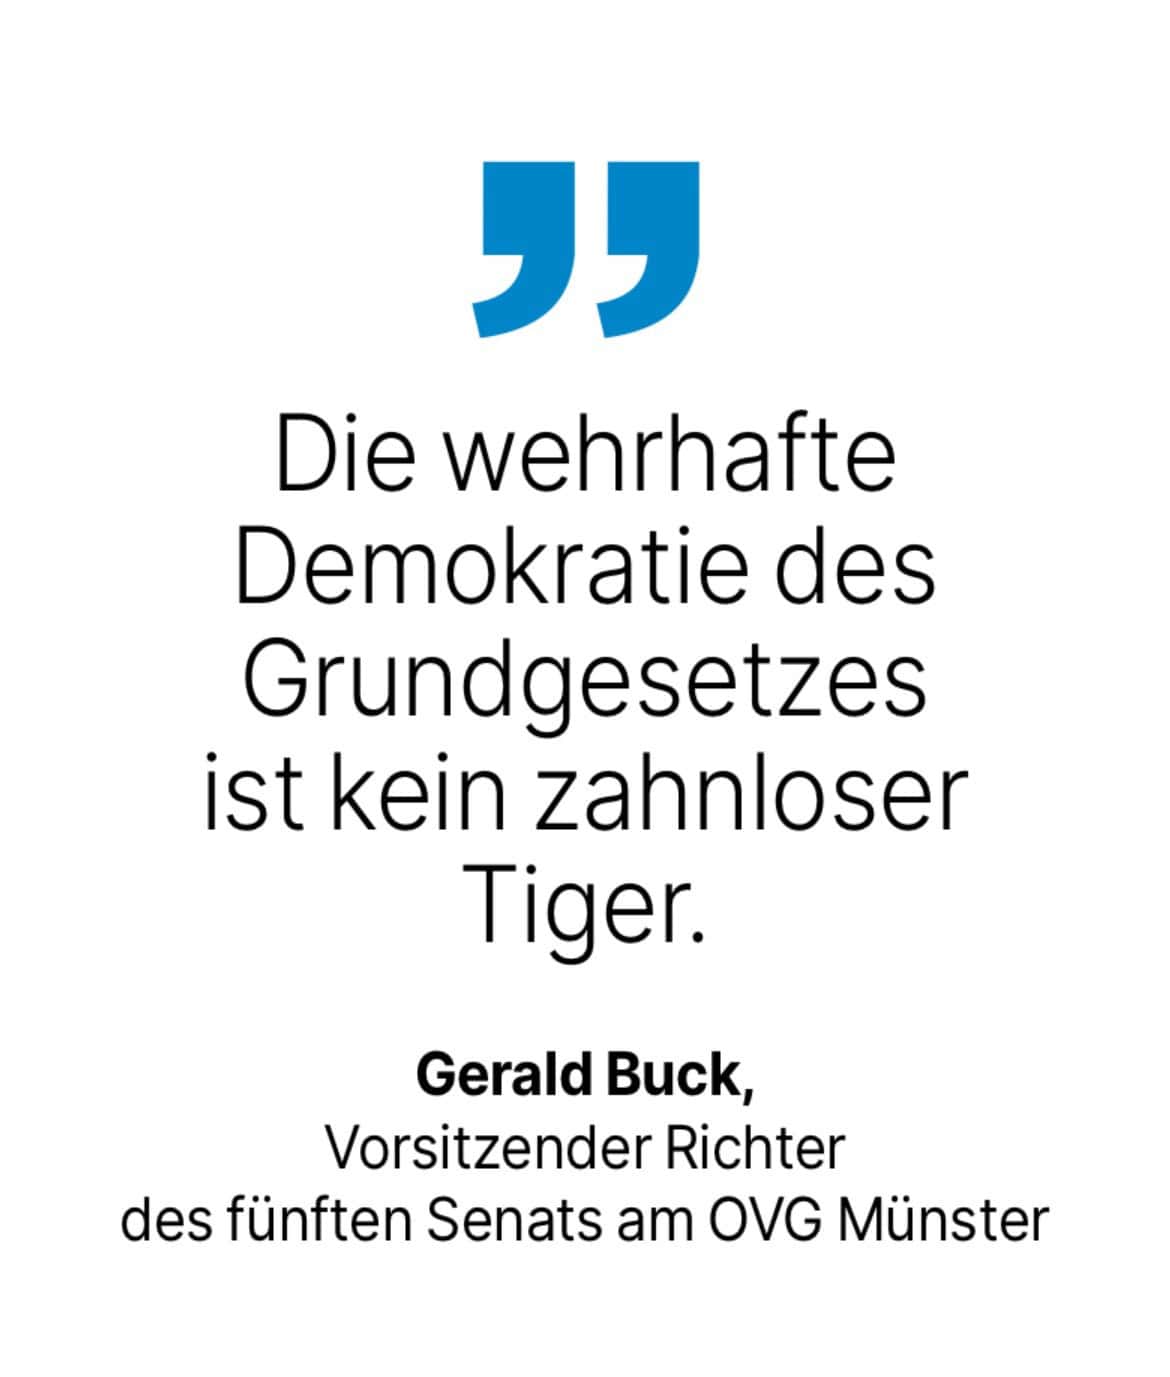 Gerald Buck, Vorsitzender Richter des fünften Senats am OVG Münster: Die wehrhafte Demokratie des Grundgesetzes ist kein zahnloser Tiger.